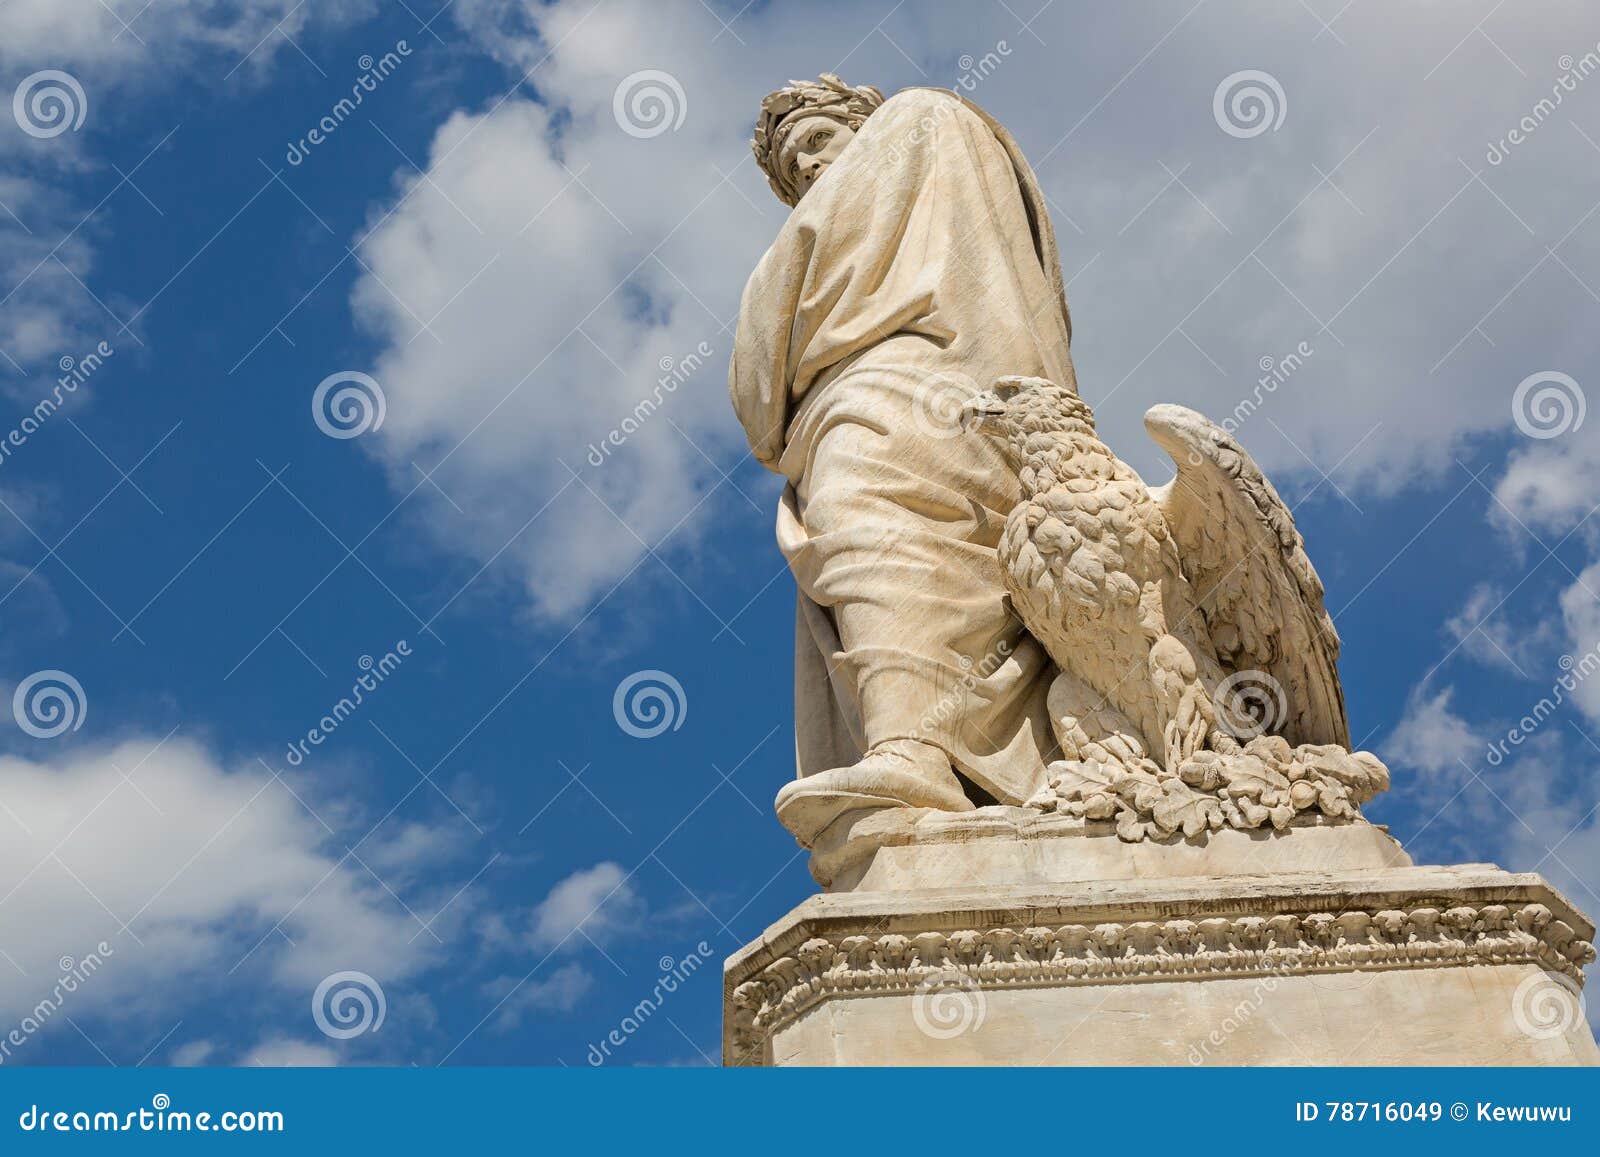 eagle and statue of durante degli alighieri, also called dante i